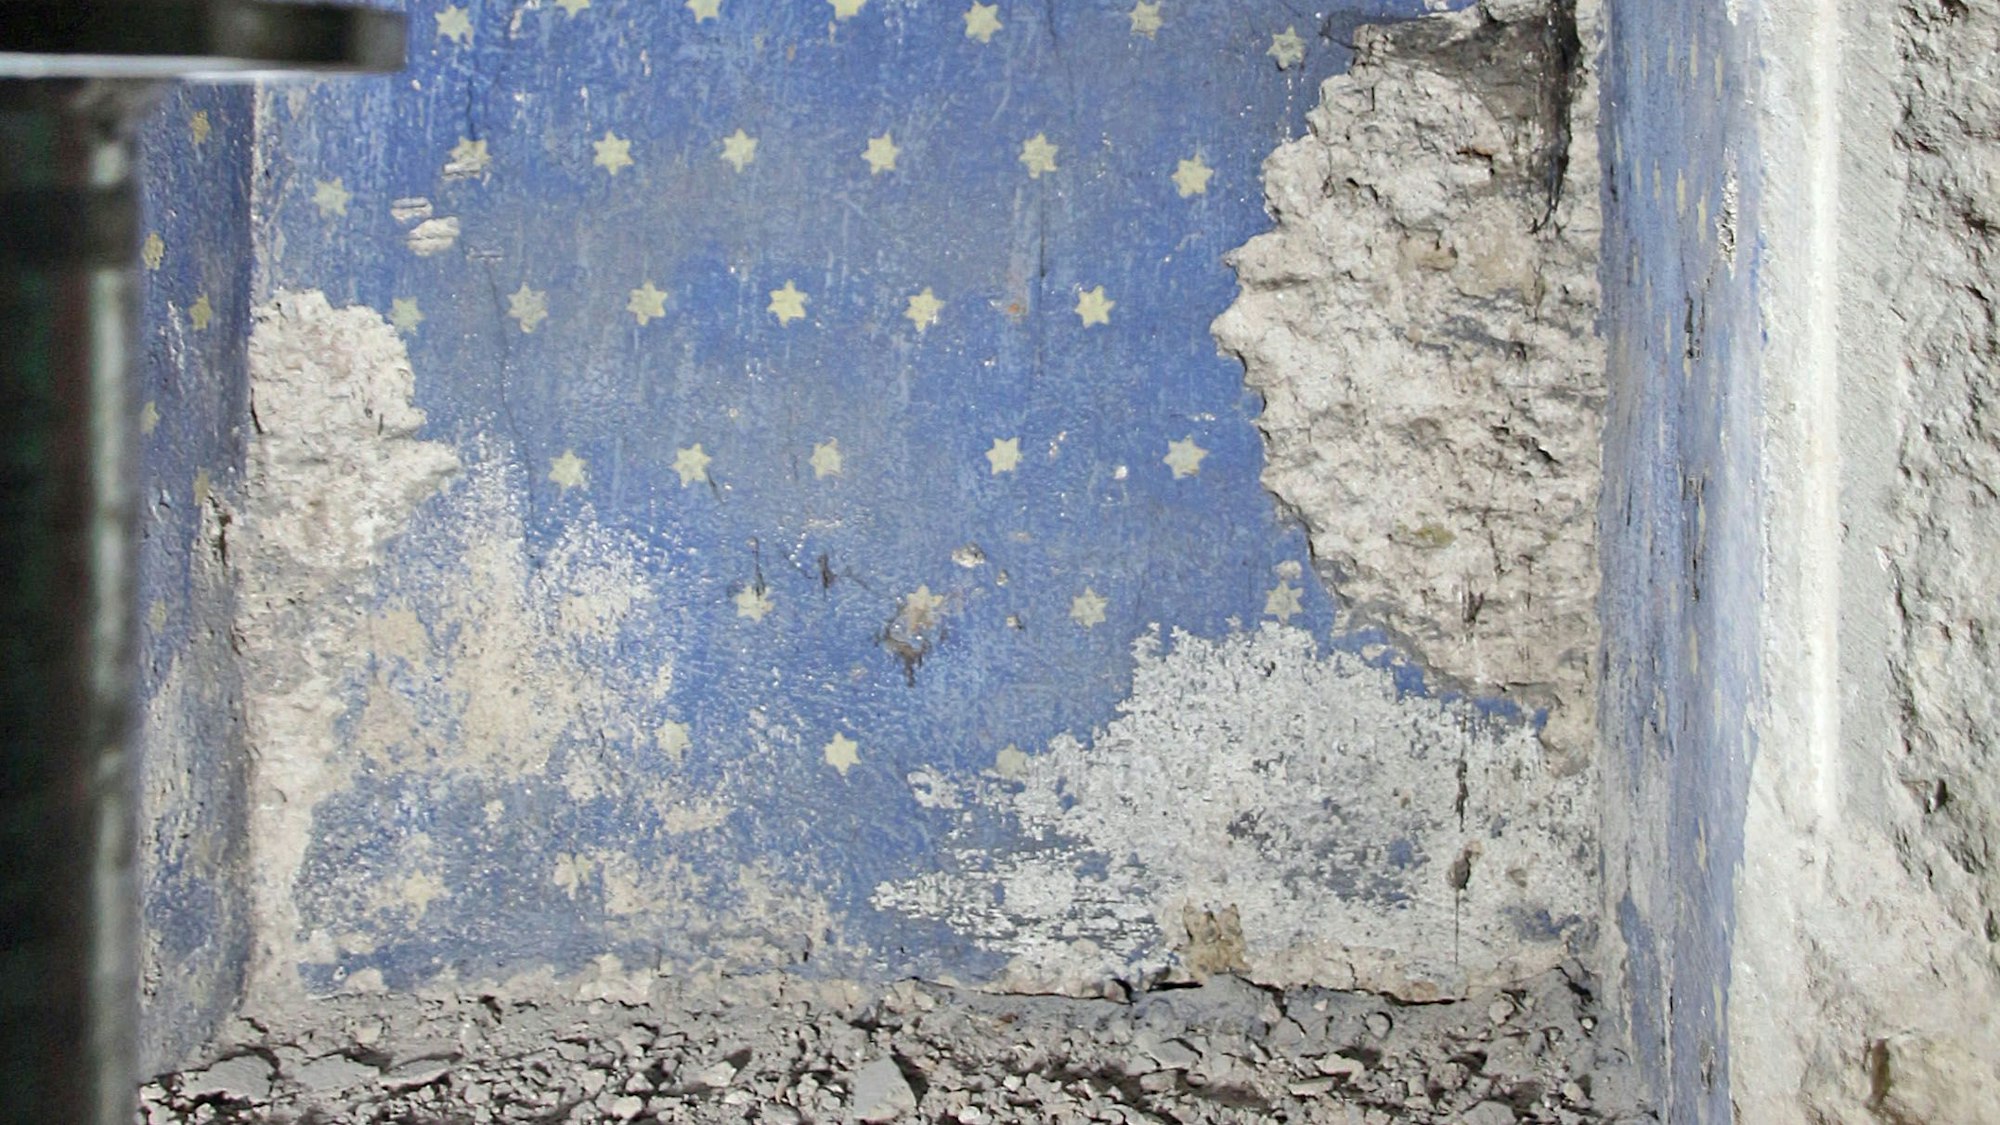 St. Pantaleon Wandschrank mit weißen Sternen auf blauem Grund